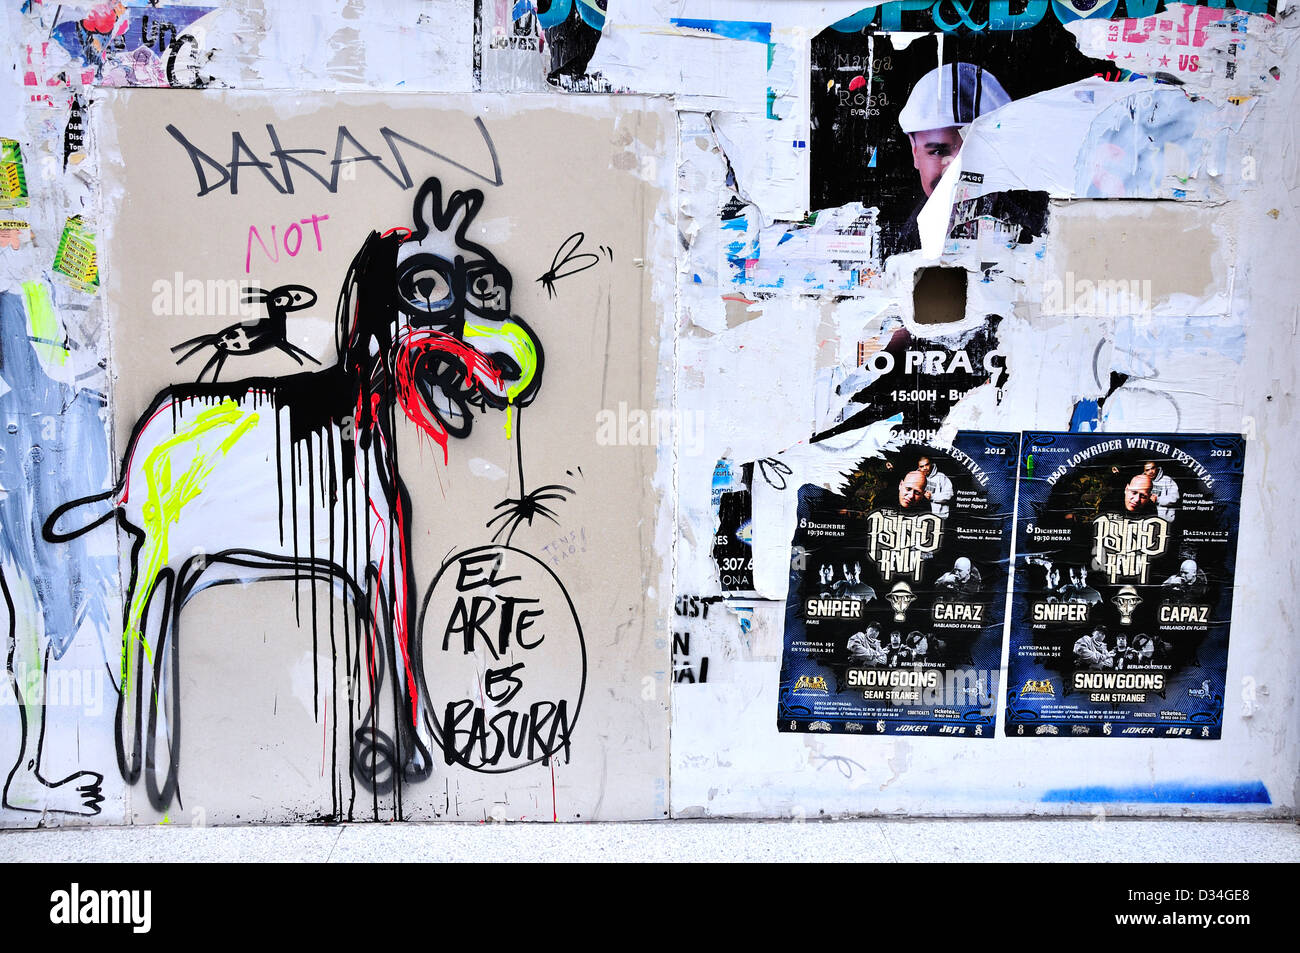 Barcelona, Catalonia, Spain. Graffiti. El arte es Basura - 'Art is Rubbish' Stock Photo